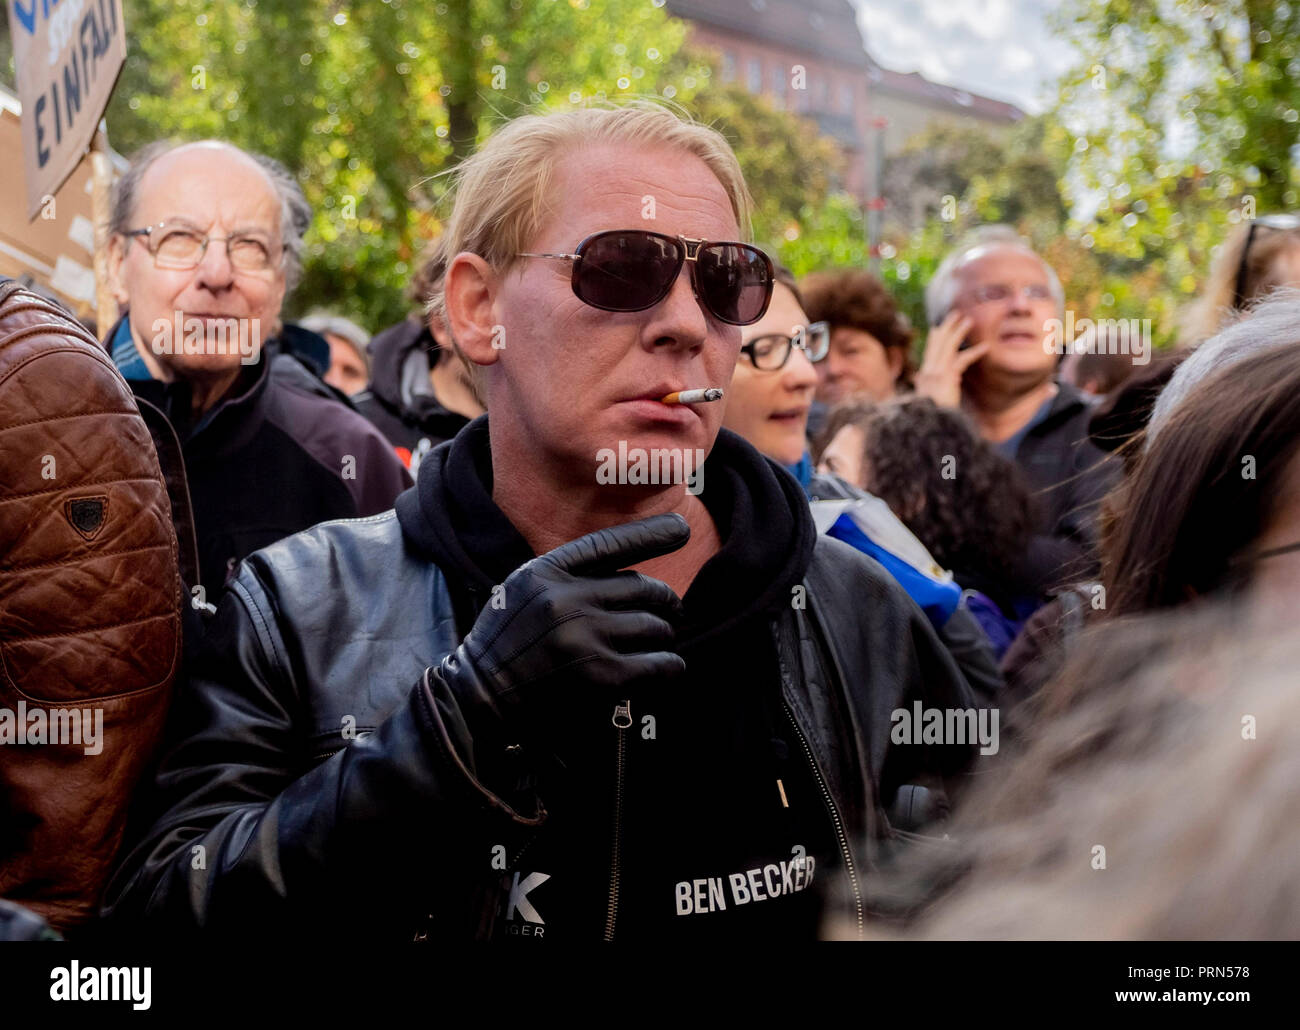 03 ottobre 2018, Berlino: l'attore Ben Becker prende parte con una sigaretta in bocca al rally "protestare contro i nazisti marzo attraverso il nostro quartiere" dell'alleanza di Berlino per una città cosmopolita e tollerante di Berlino. Foto: Christoph Soeder/dpa Foto Stock